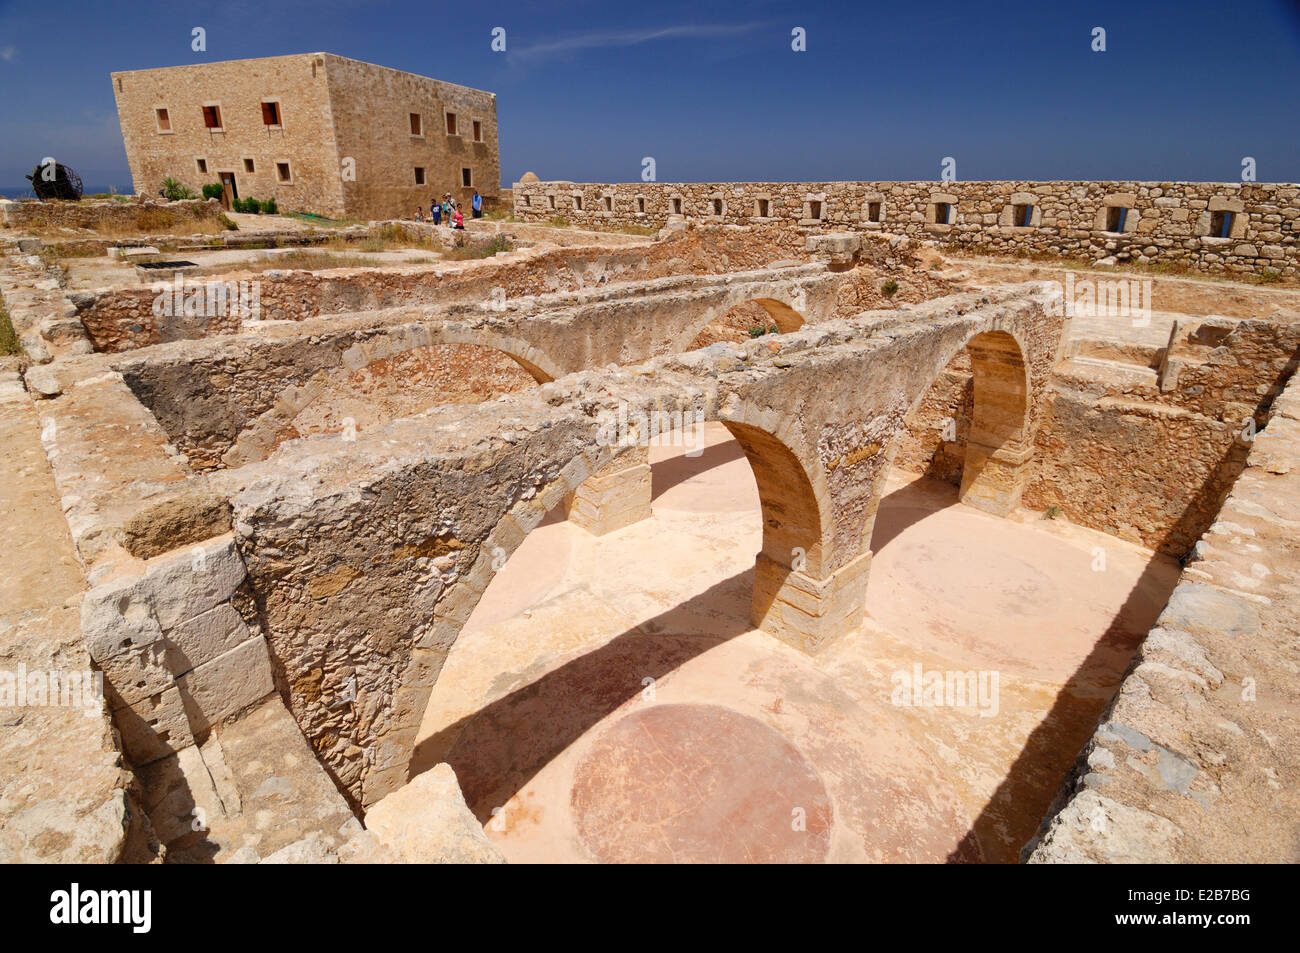 Greece, Crete, Rethymnon, Venetian fortress (Fortezza), ruins of arches Stock Photo